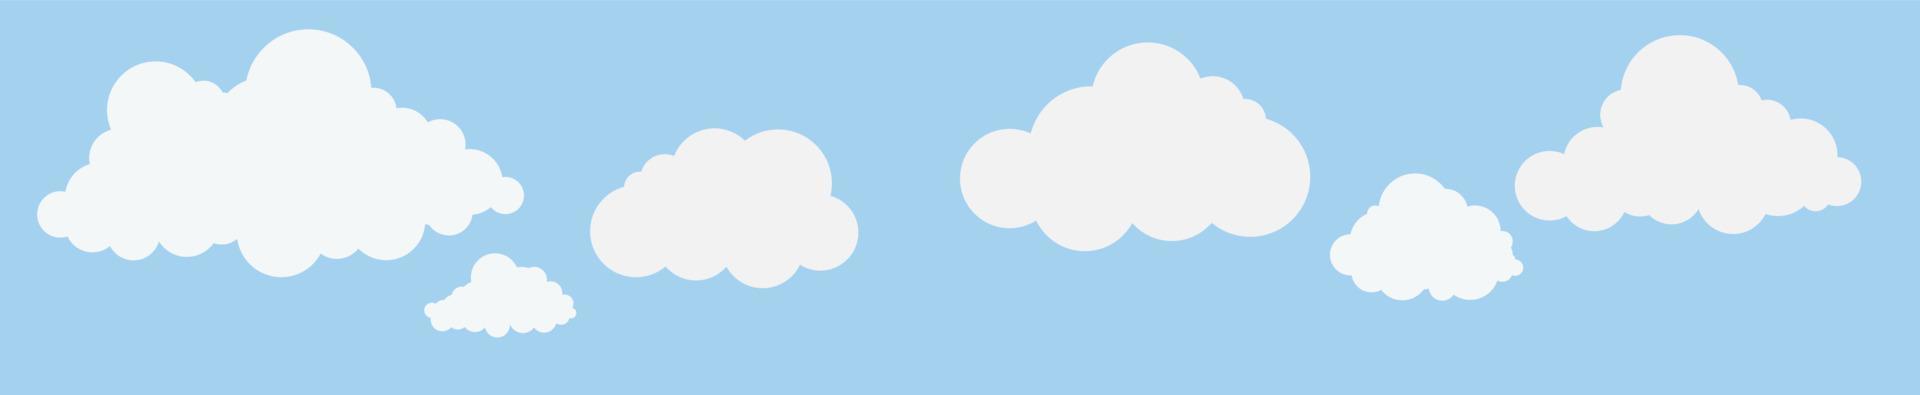 nuvens e céu, fundo de natureza meteorológica, banner horizontal, ilustração vetorial. vetor